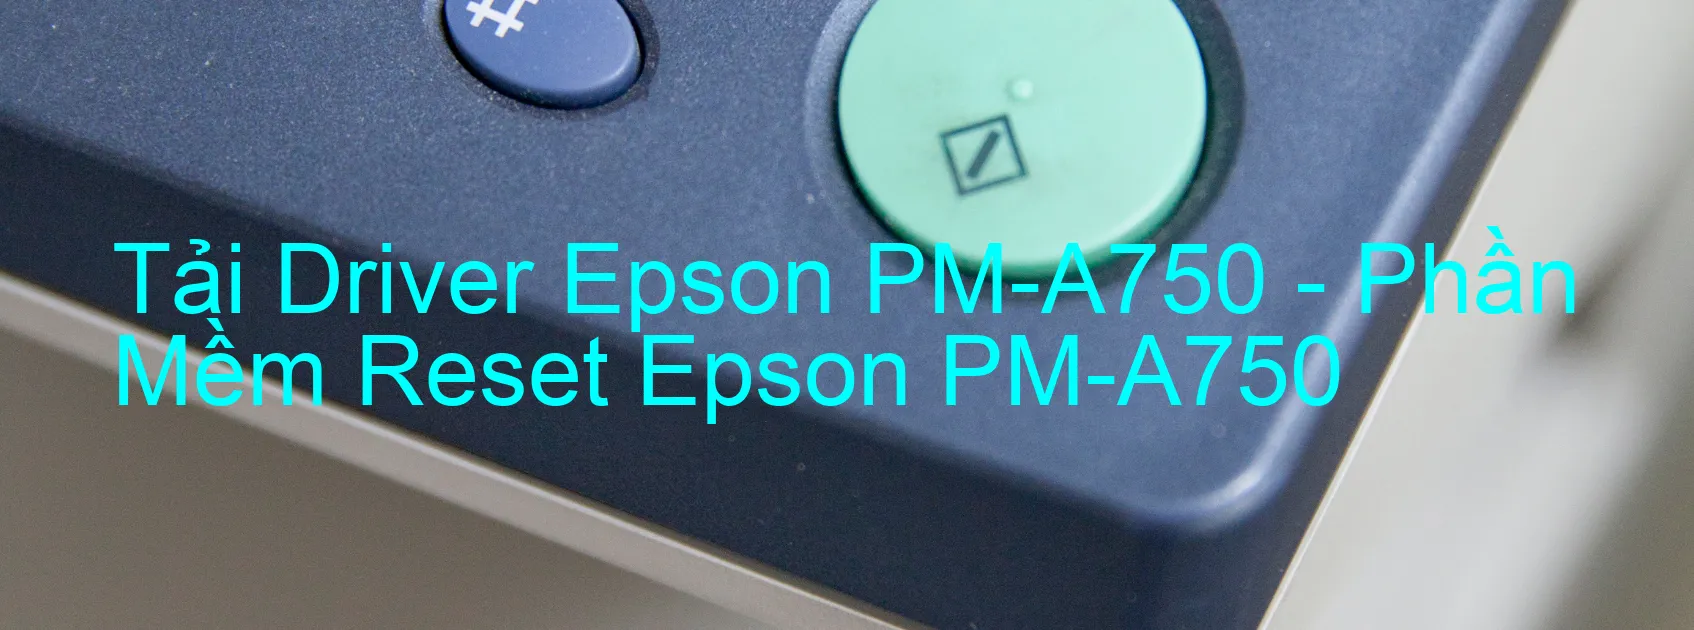 Driver Epson PM-A750, Phần Mềm Reset Epson PM-A750